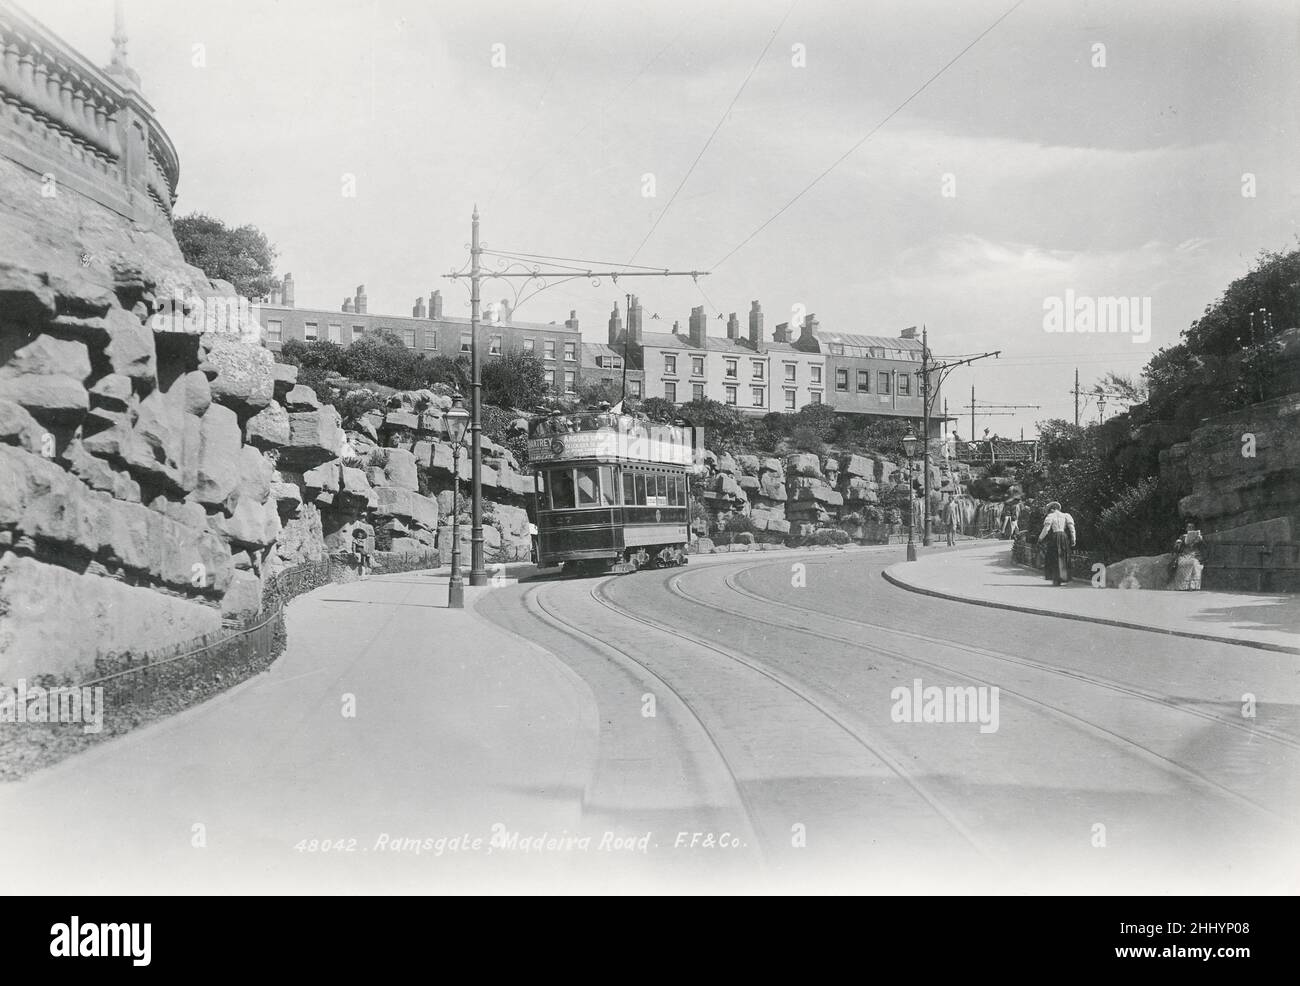 Fotografía vintage, finales de 19th, principios del siglo 20th, vista de Madeira Road, Ramsgate, East Kent Foto de stock